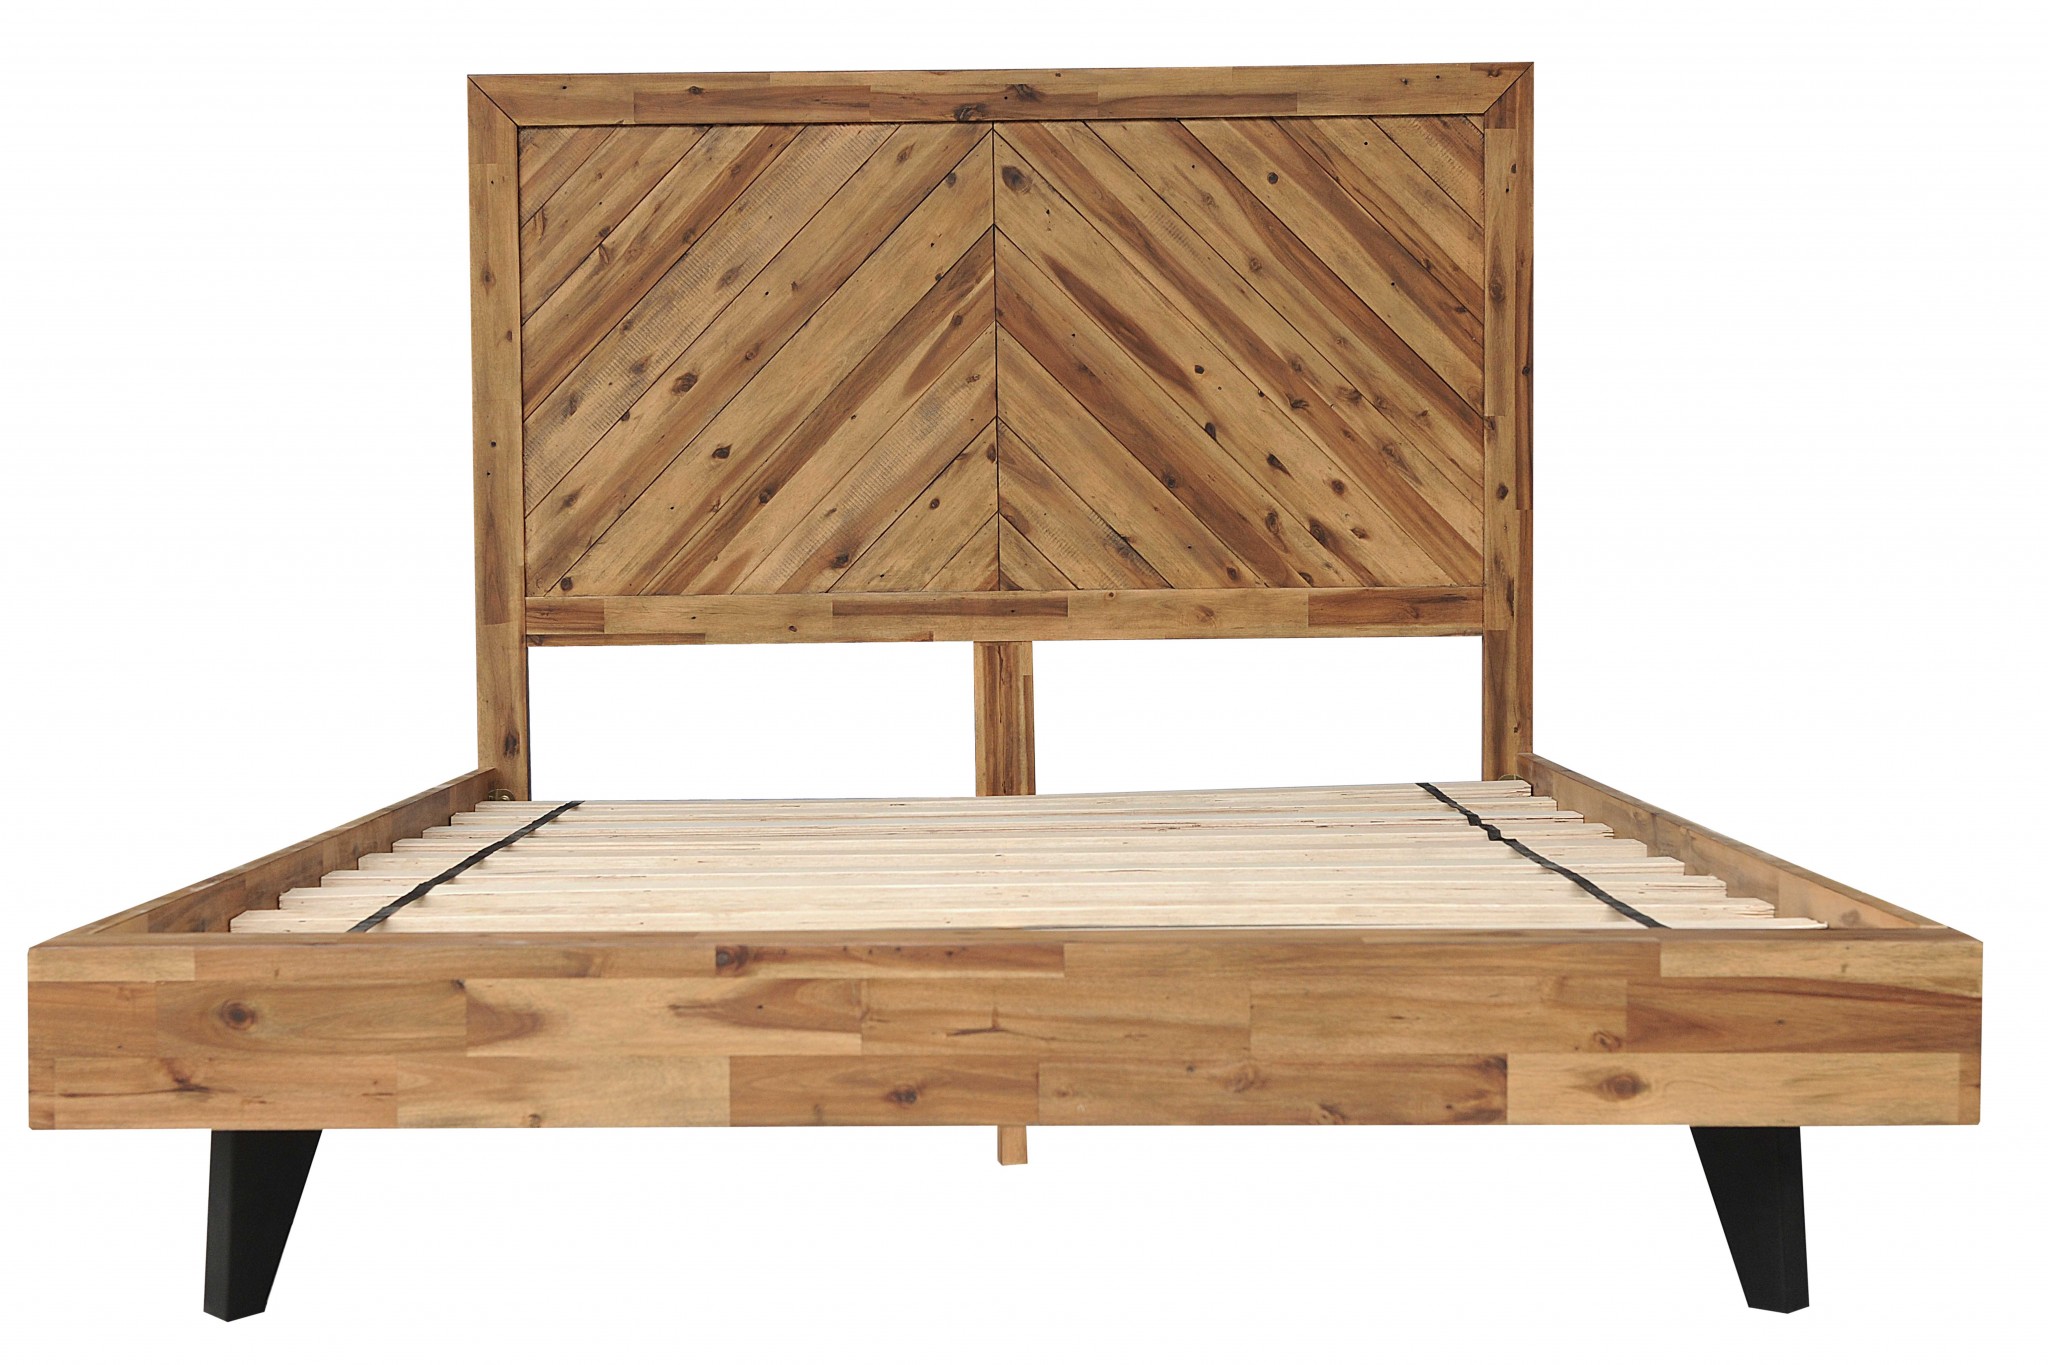 80" X 88" X 54" Natural Acacia Wood 7 Plywood Metal King Size Bed